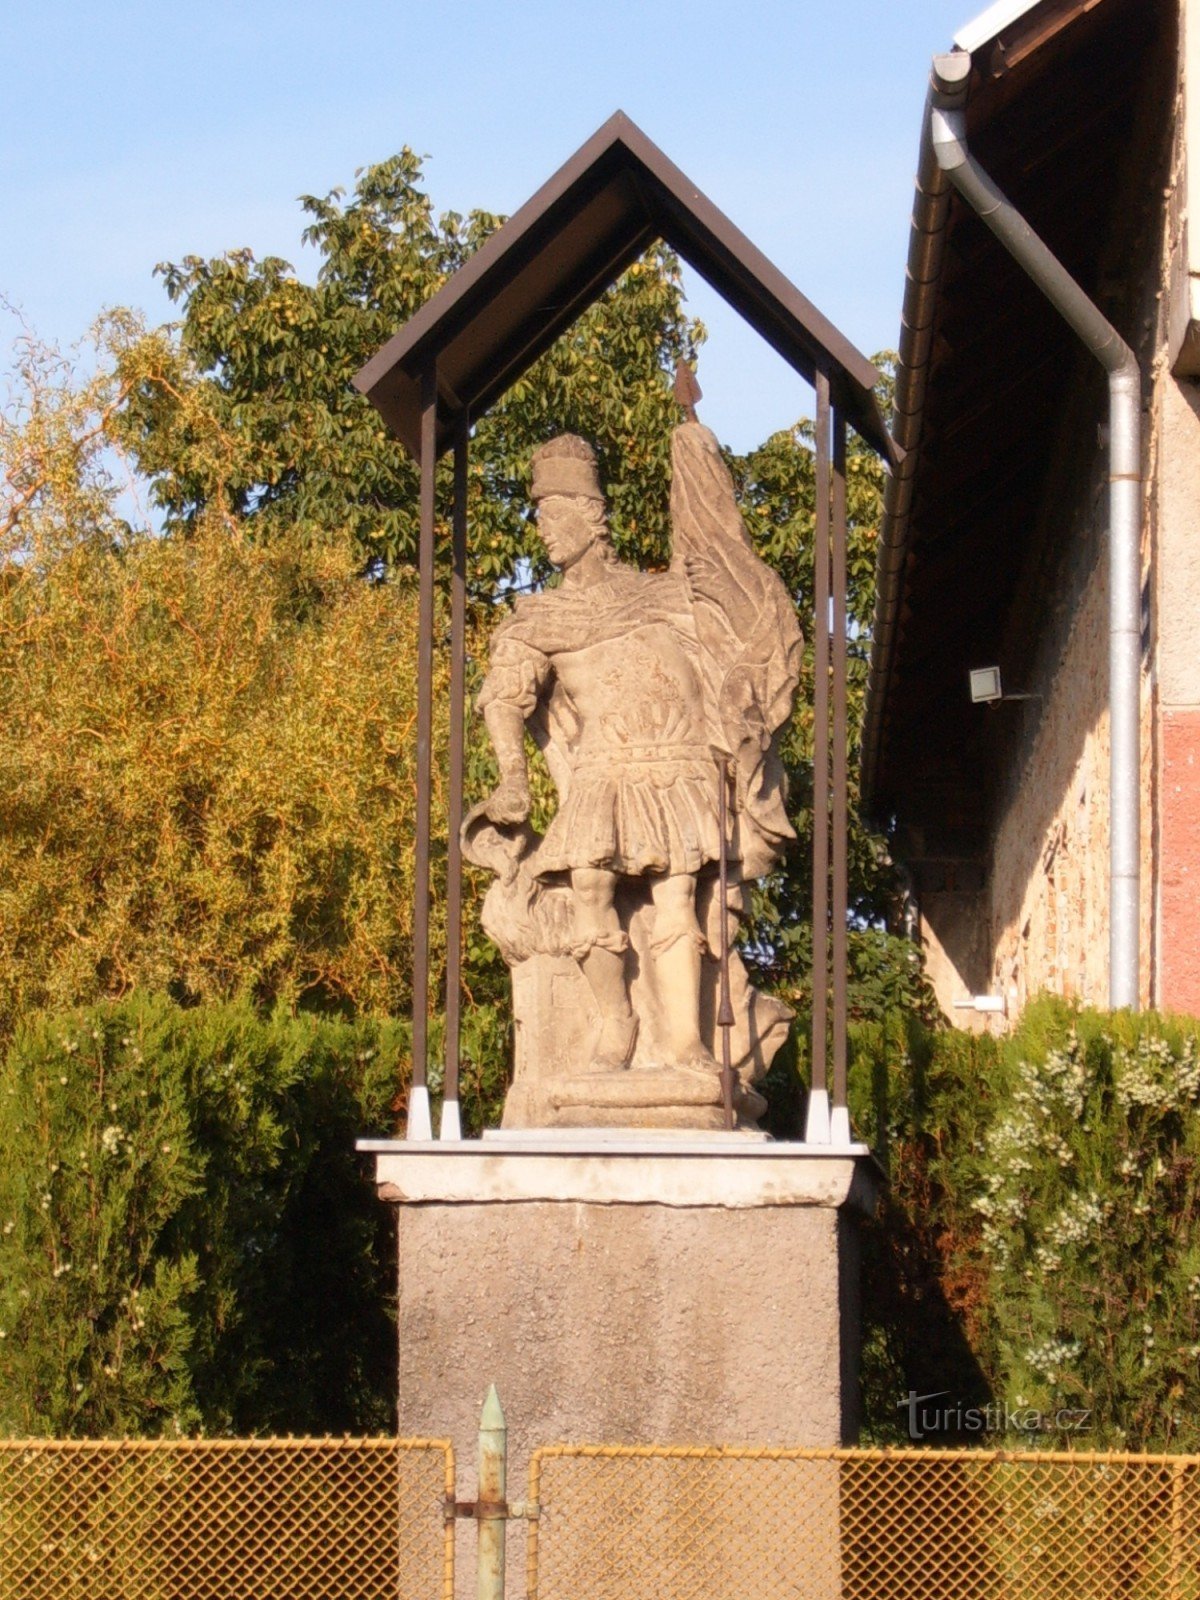 Martins staty av St. Floriana